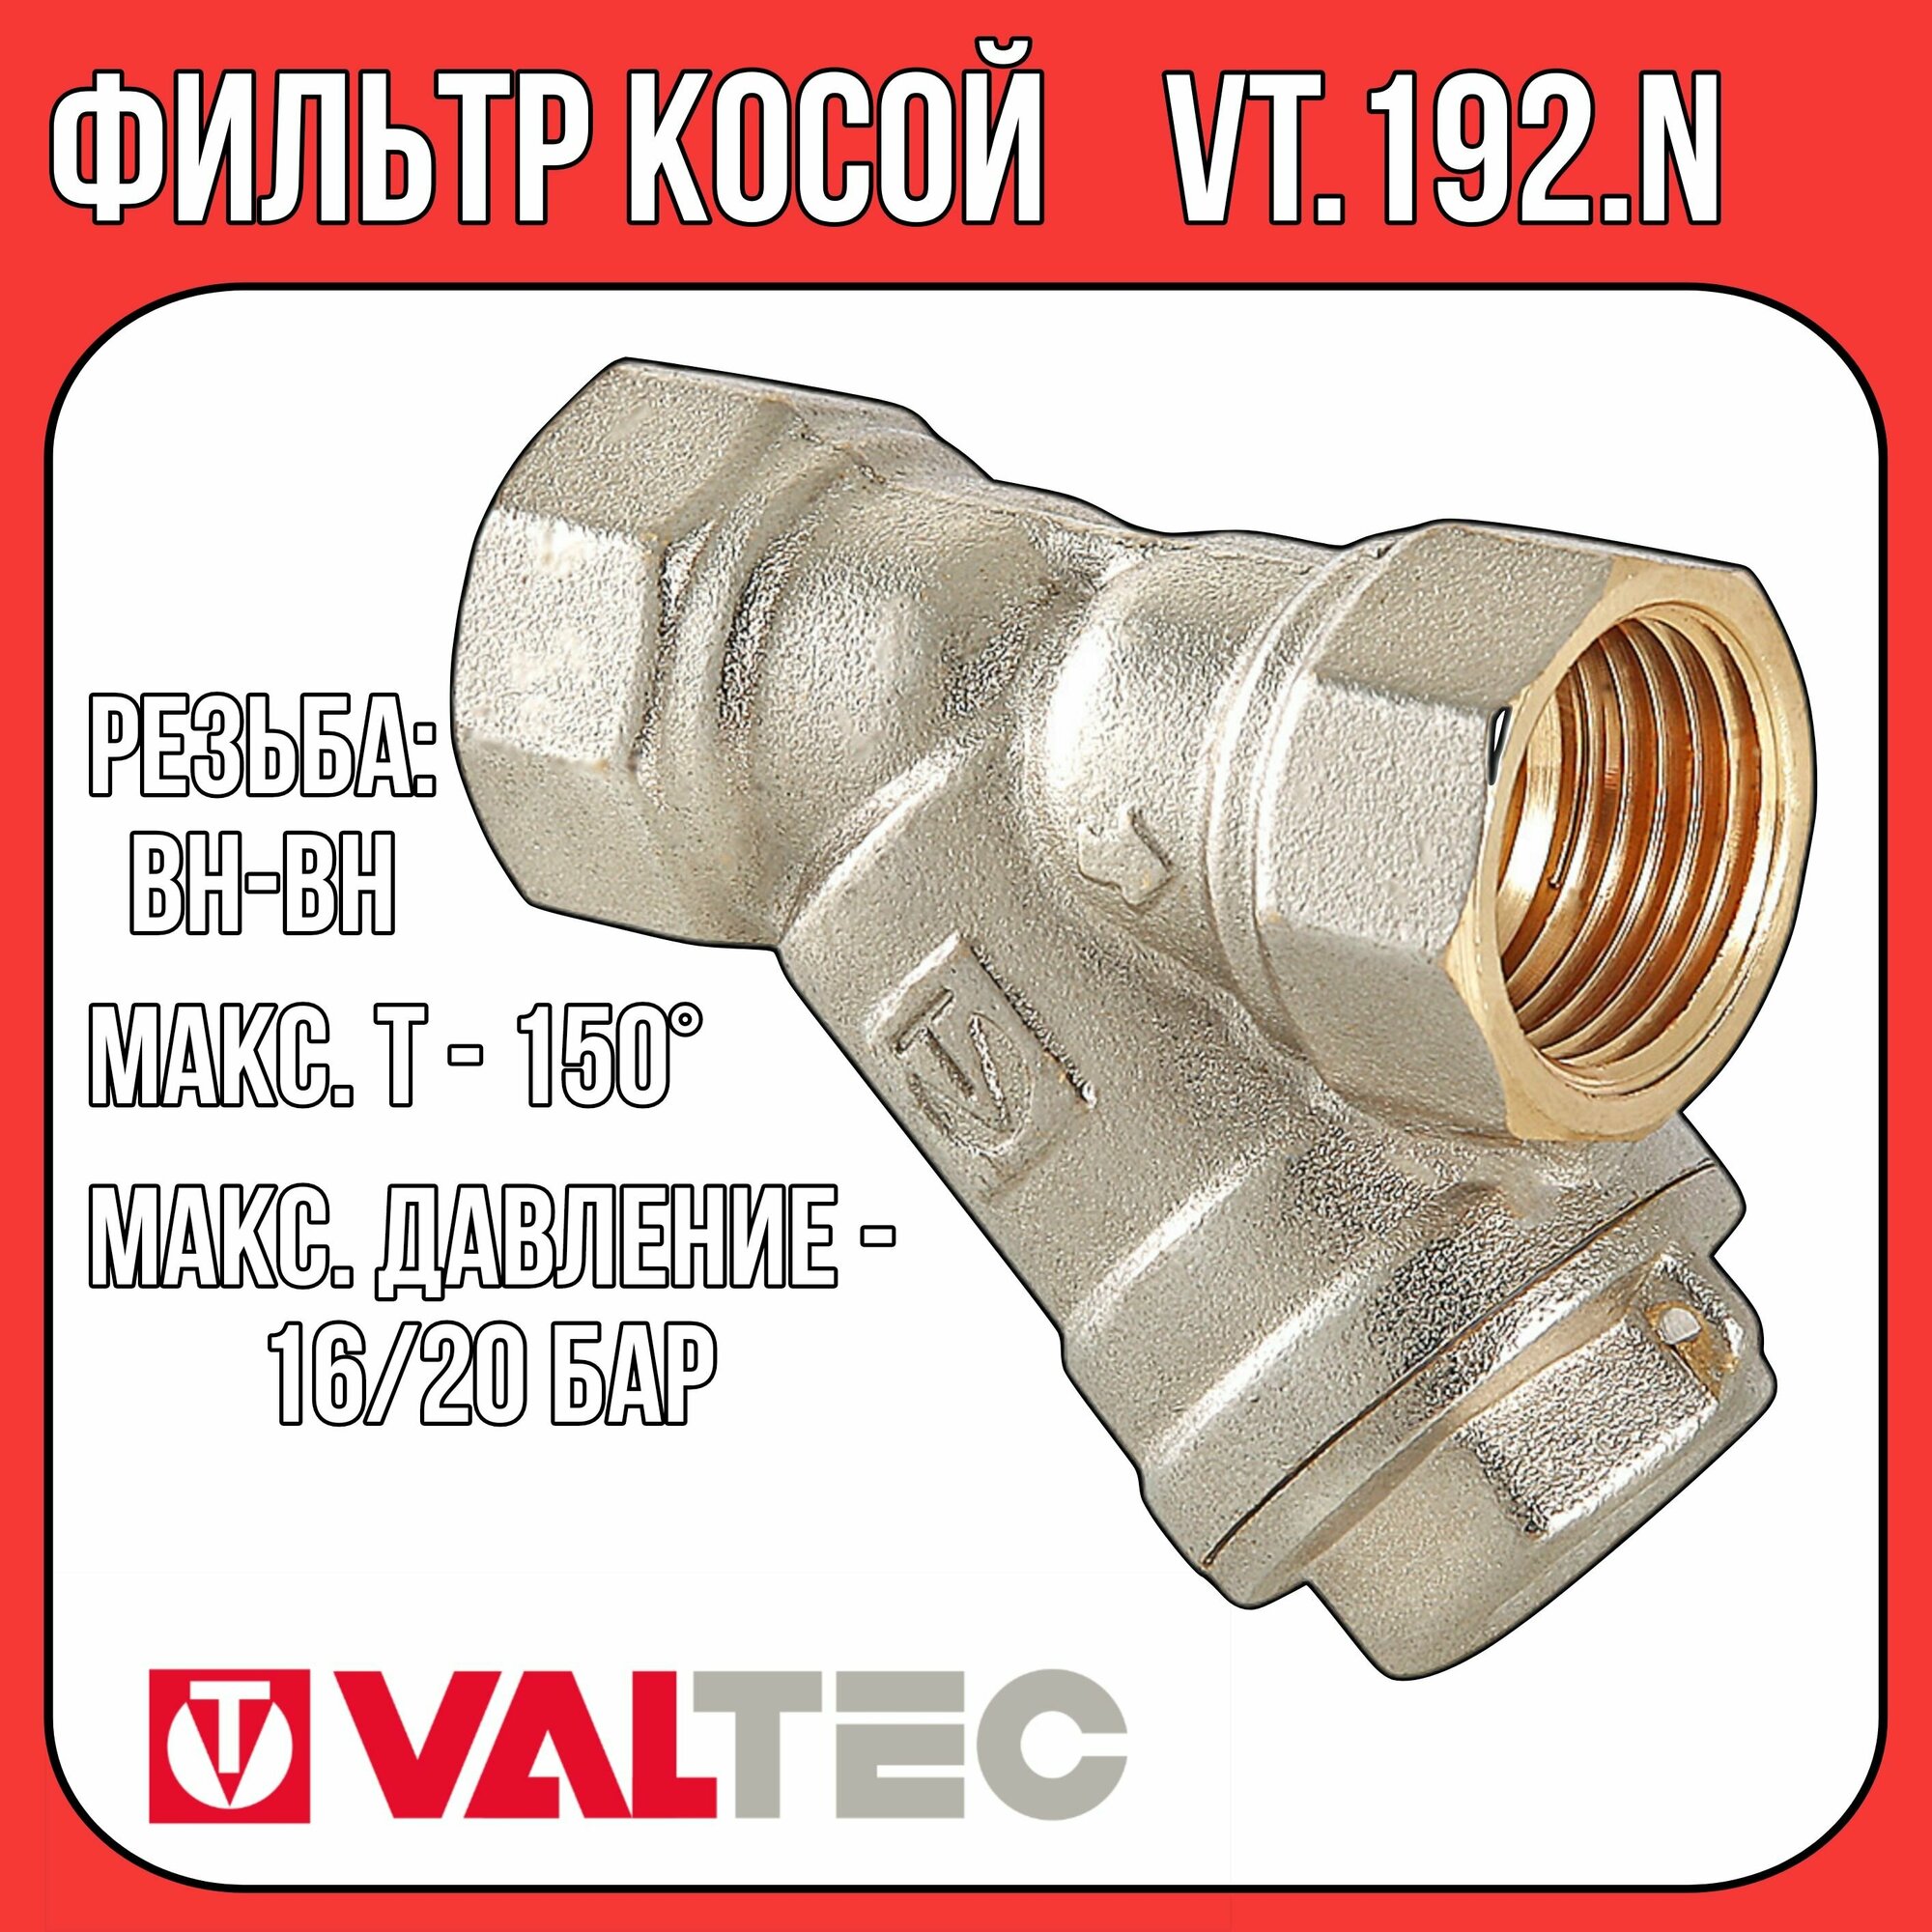 Фильтр косой для очистки воды Valtec 1/2" VT.192.N.04 (латунь) - фото №19